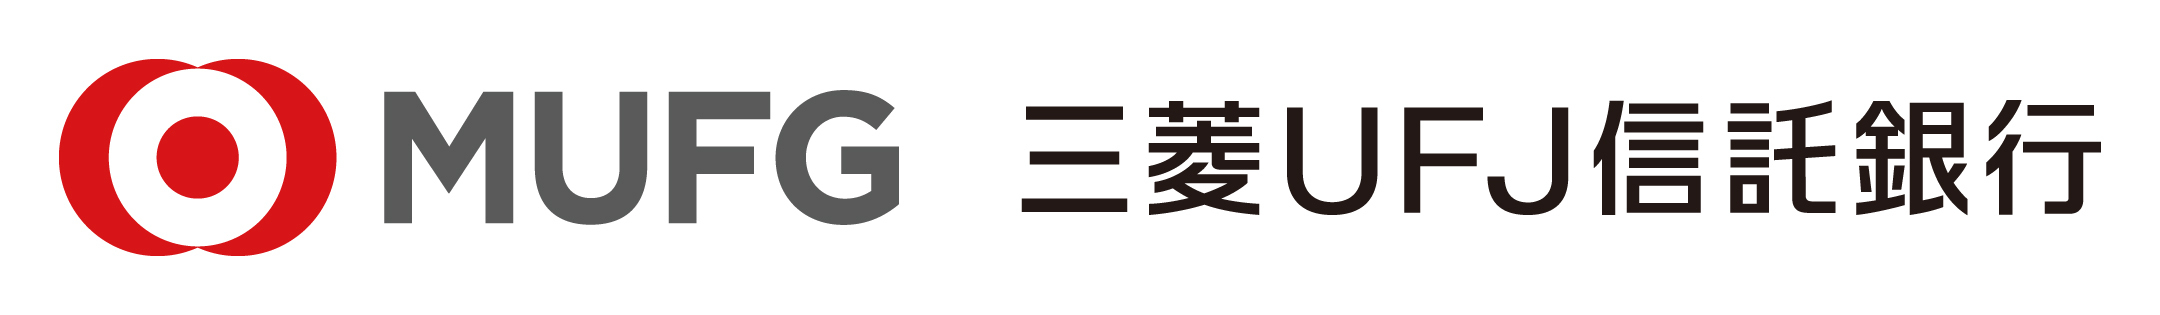 三菱UFJ信託銀行ロゴ